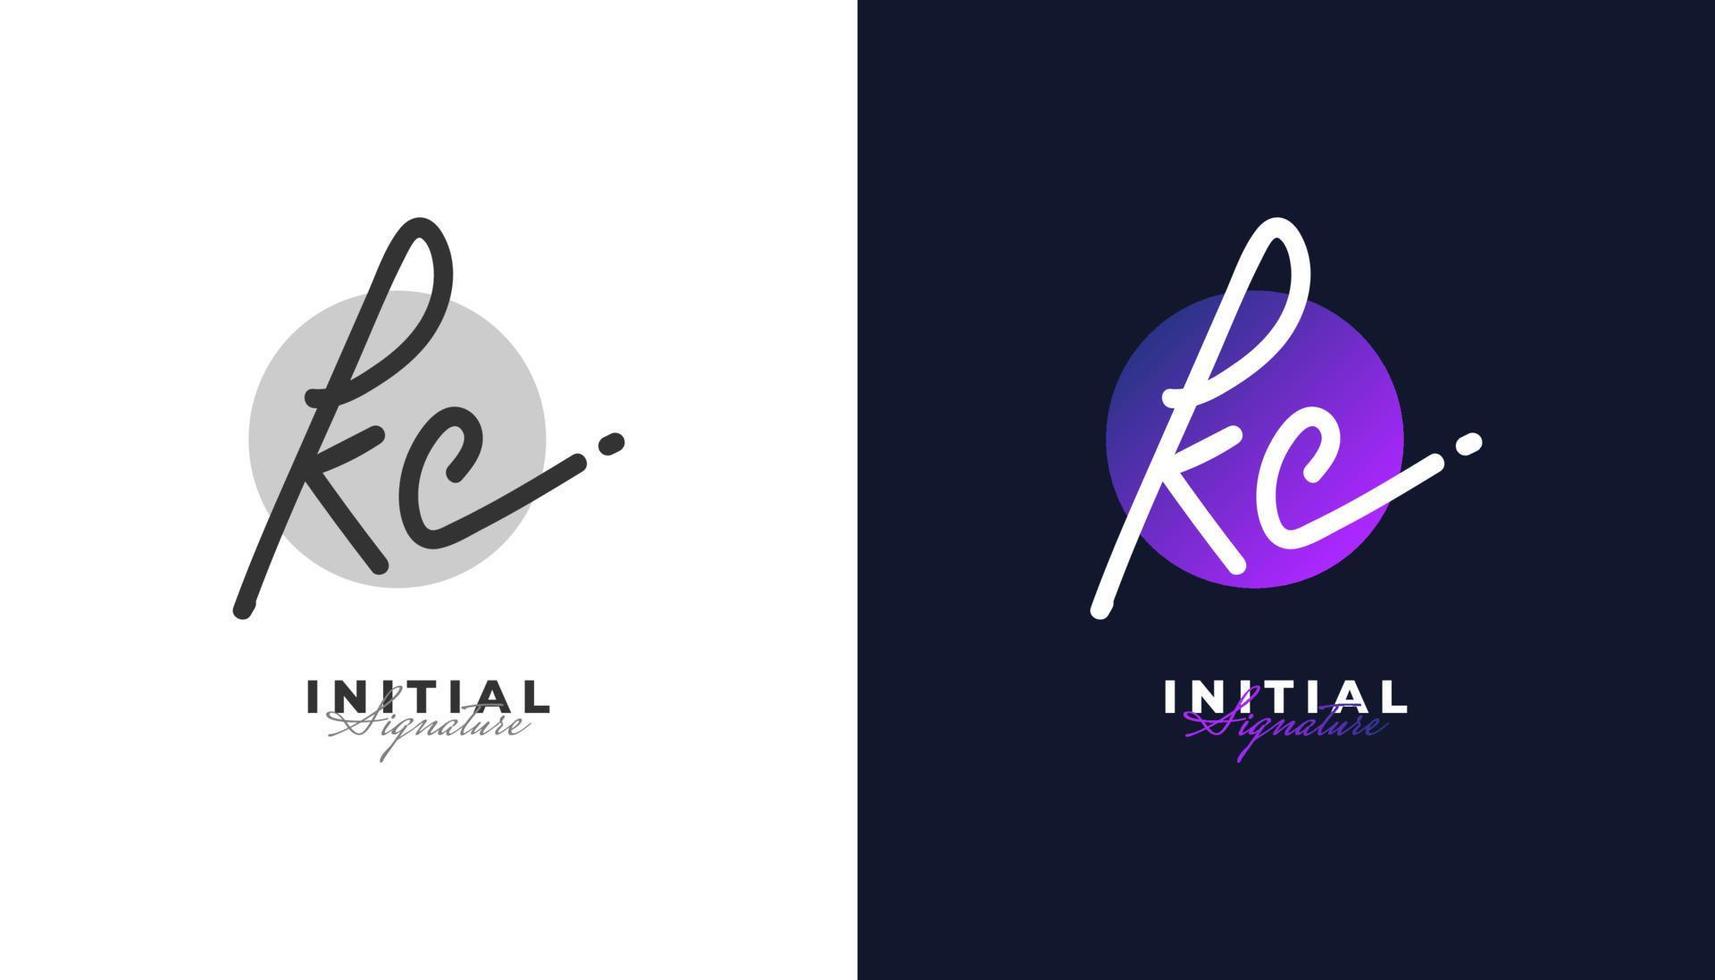 k e c design de logotipo inicial de assinatura com estilo de caligrafia. kc assinatura logotipo ou símbolo para casamento, moda, joias, boutique, botânica, floral e identidade de negócios vetor